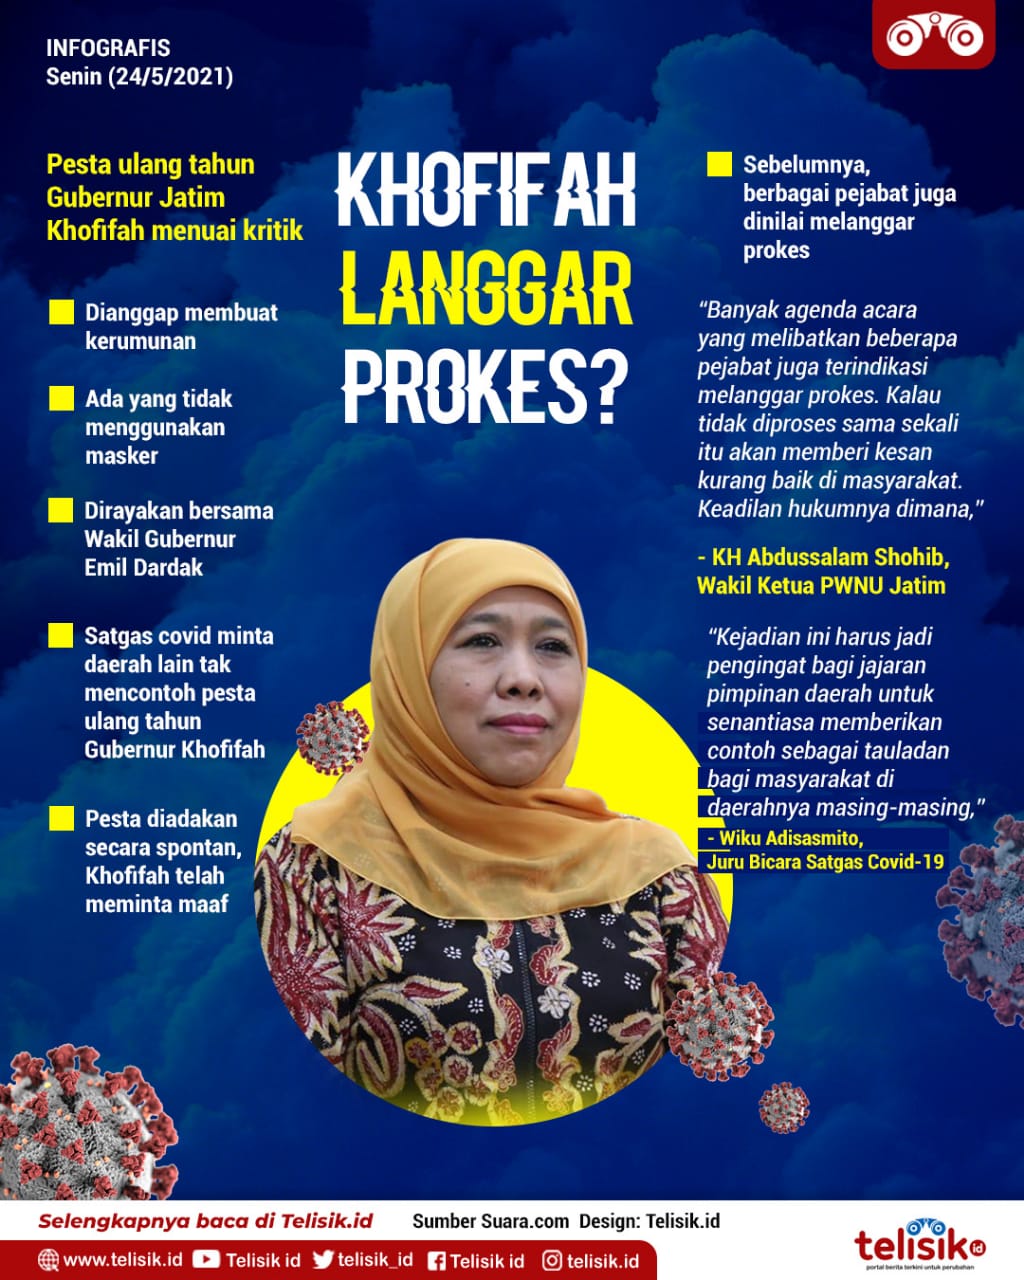 Infografis: Satgas Covid Minta Daerah Lain Tak Mencontoh Pesta Ultah Gubernur Khofifah